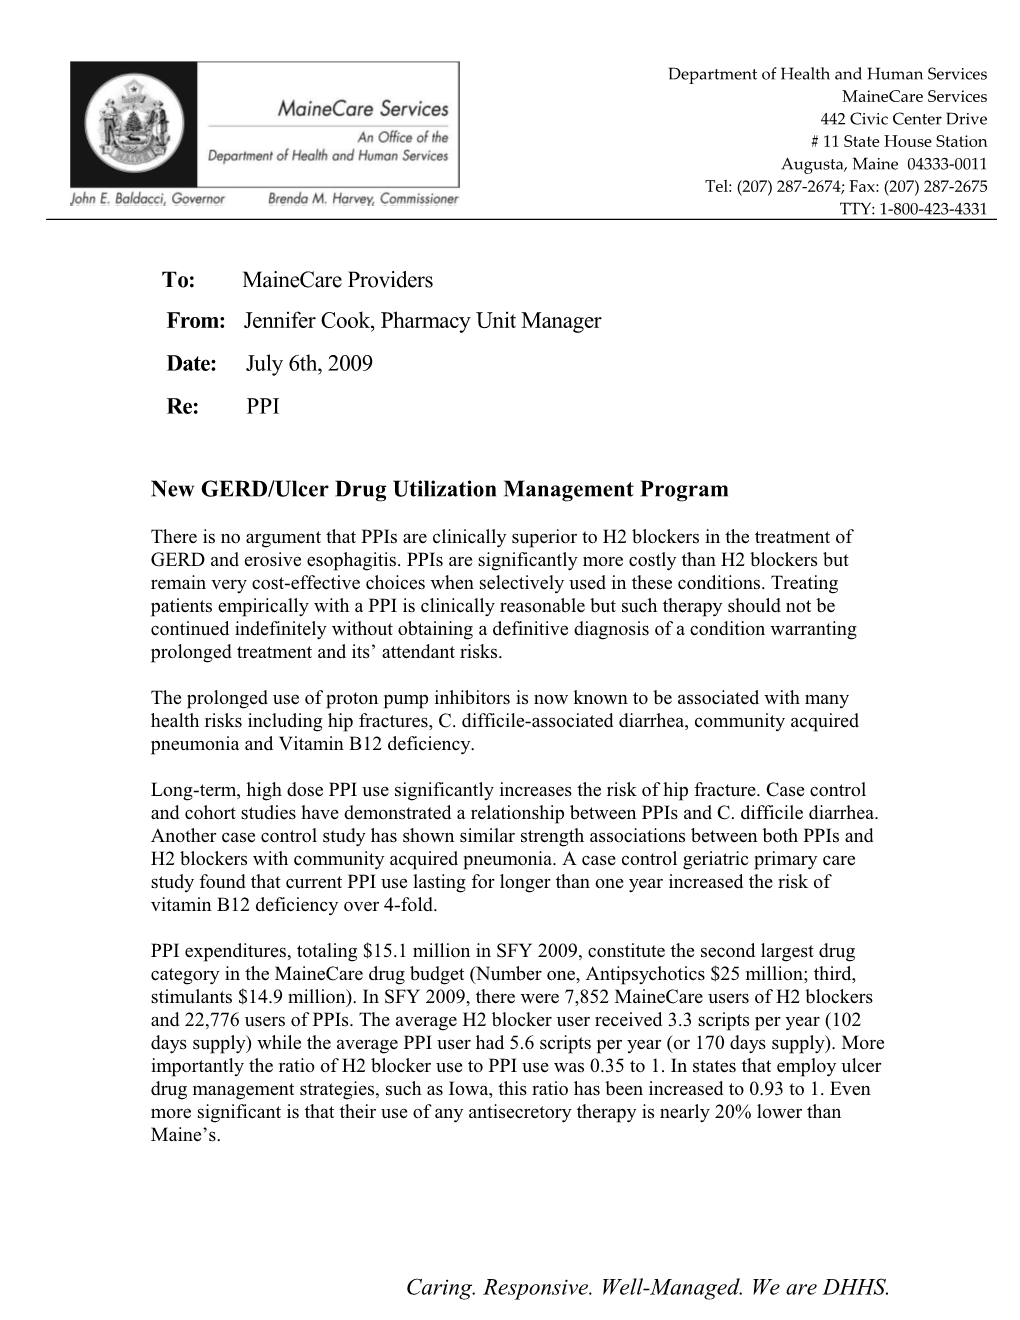 New GERD/Ulcer Drug Utilization Management Program